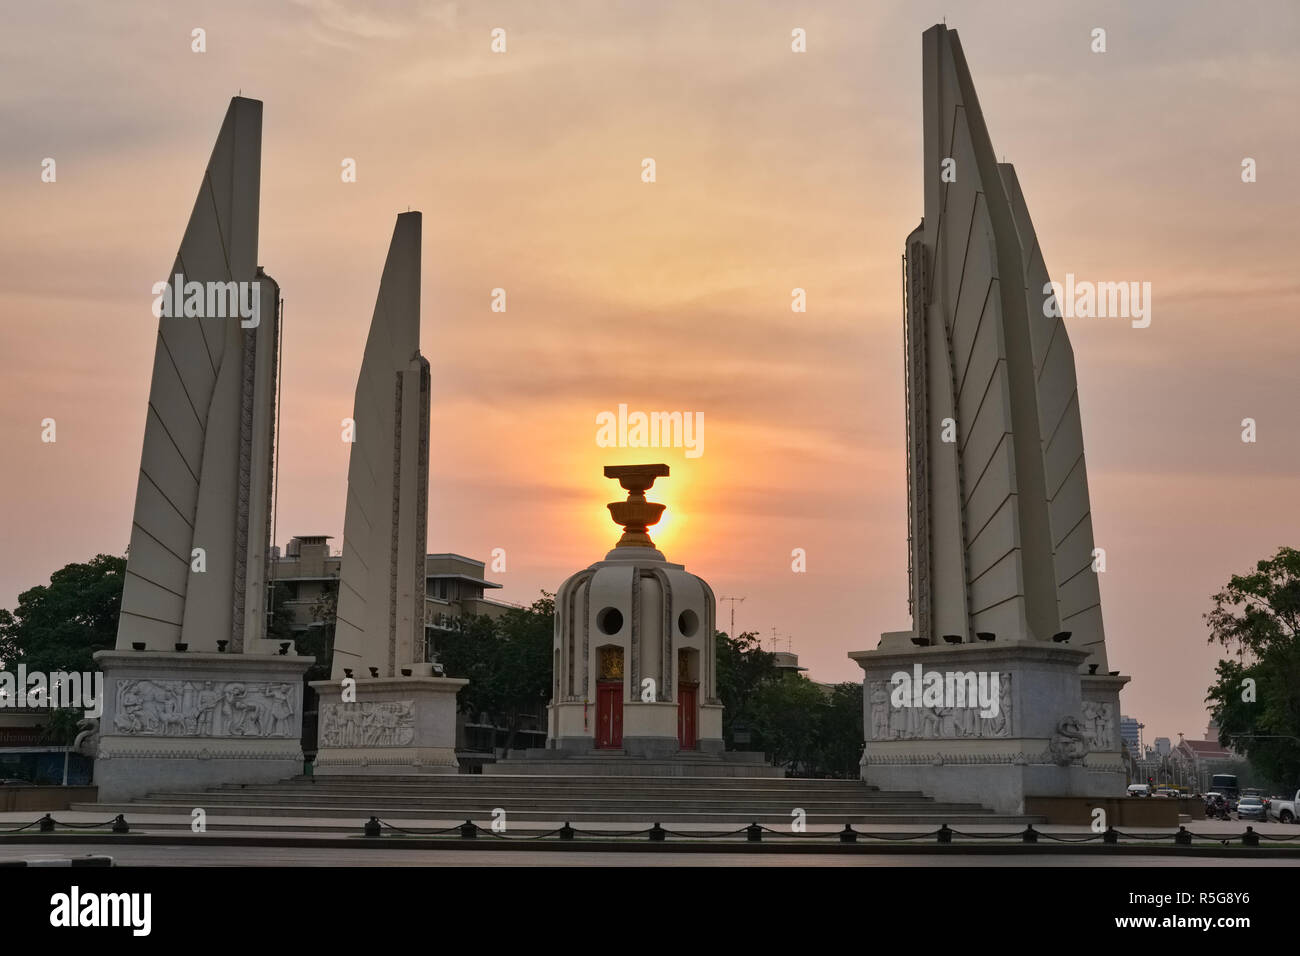 La democrazia è un monumento a Bangkok, Thailandia, il sole di setting posizionato in corrispondenza del suo centro, dove una rappresentazione simbolica della costituzione tailandese è in primo piano Foto Stock